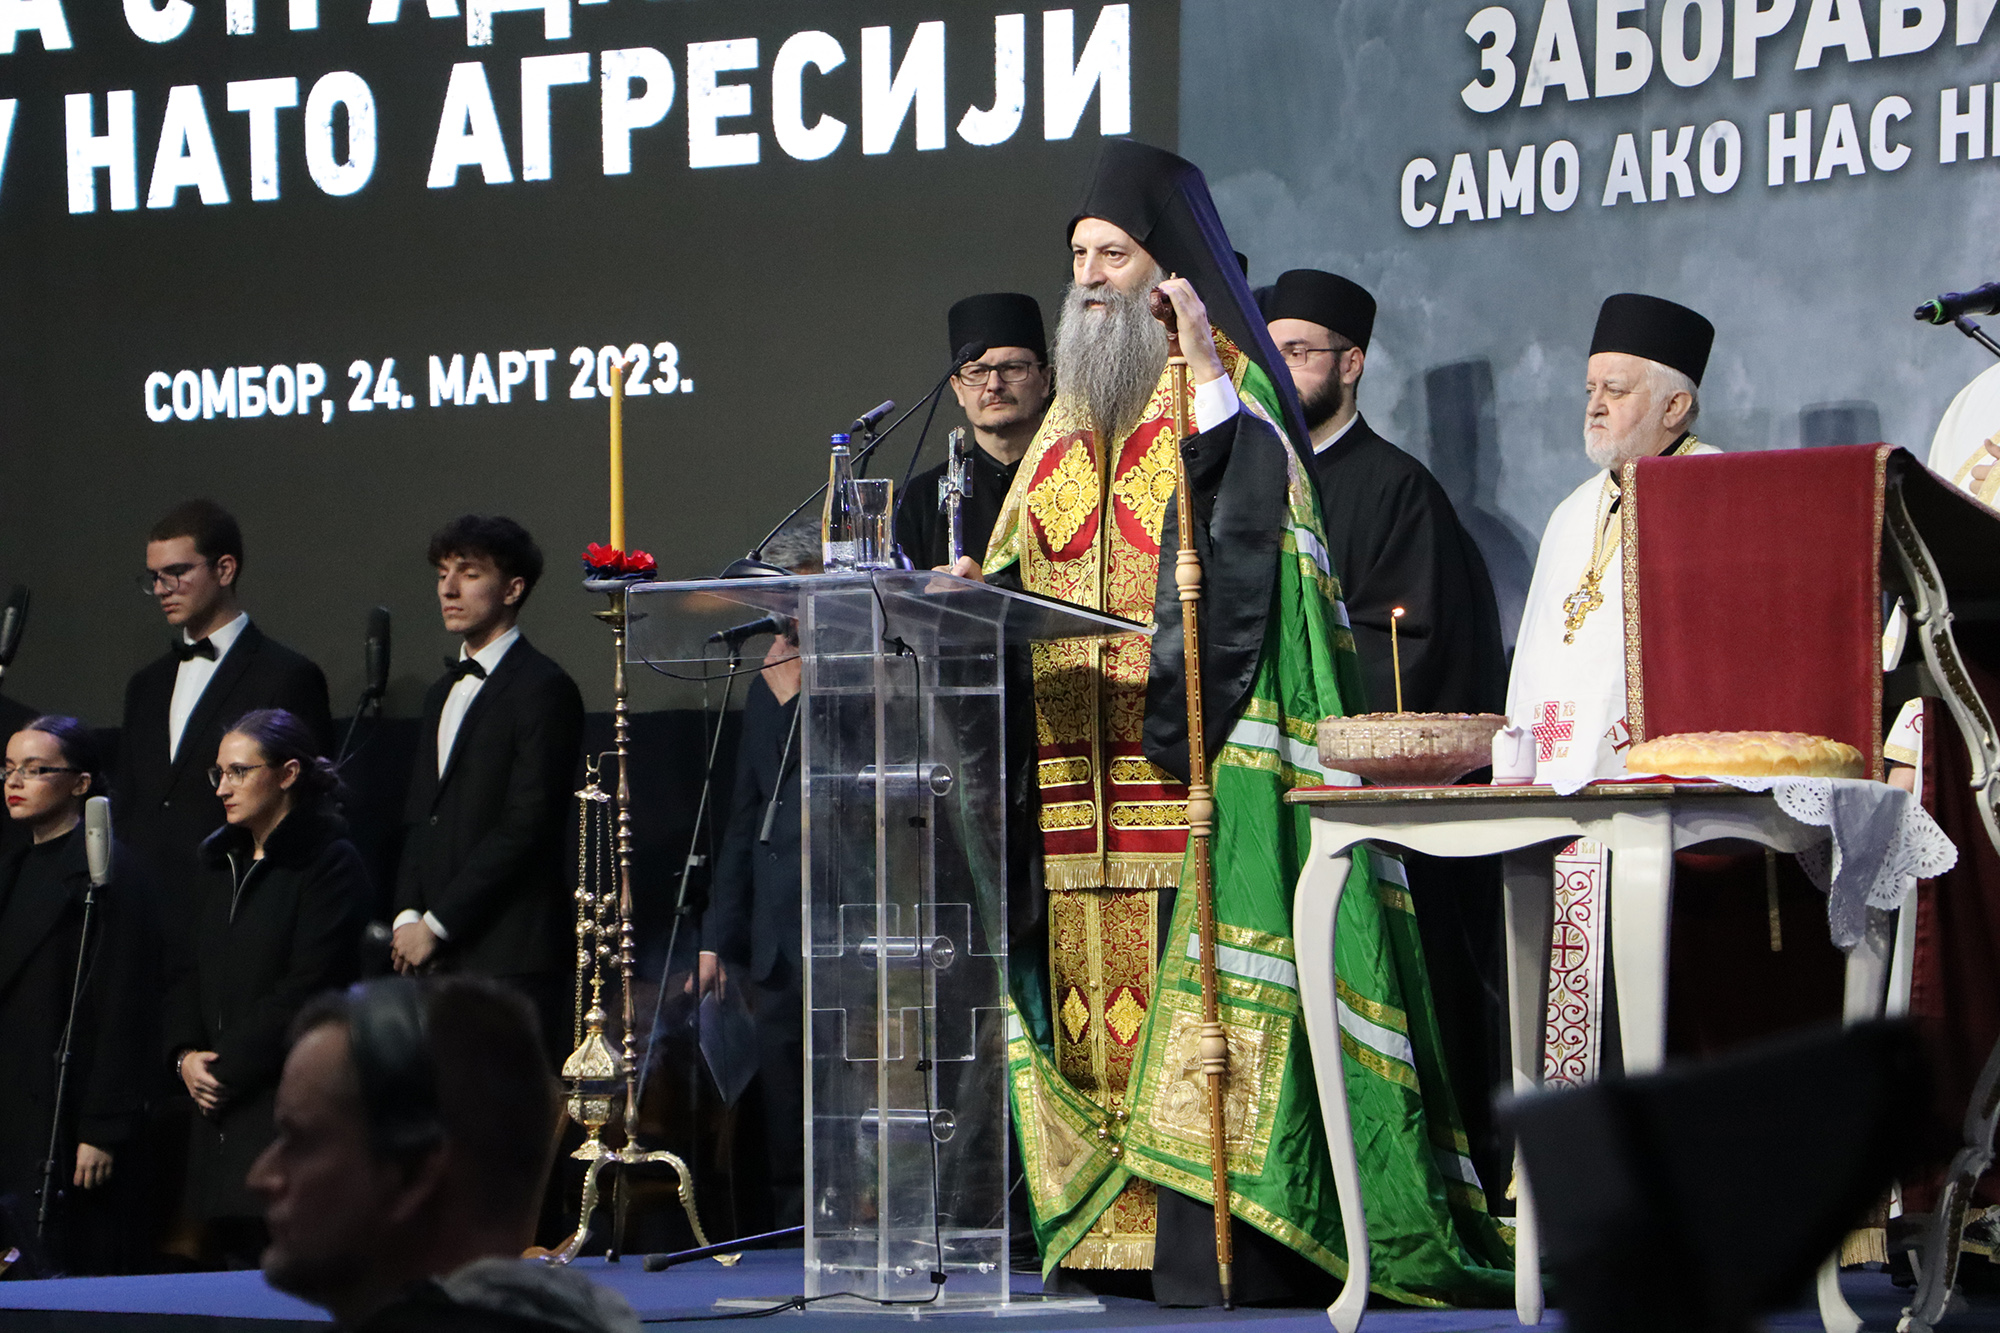 Patriarch Porfirije Led Remembrance of NATO Agression of 1999